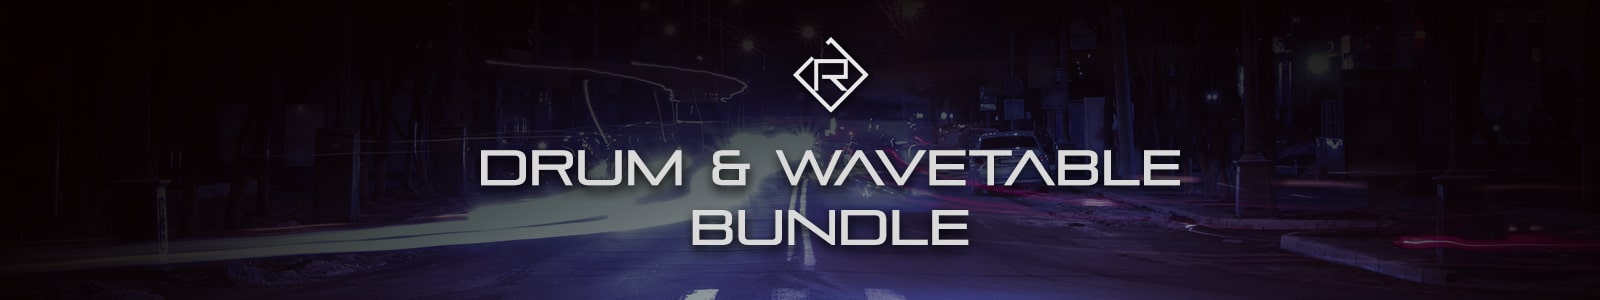 Drum & Wavetable Bundle by Rigid Audio